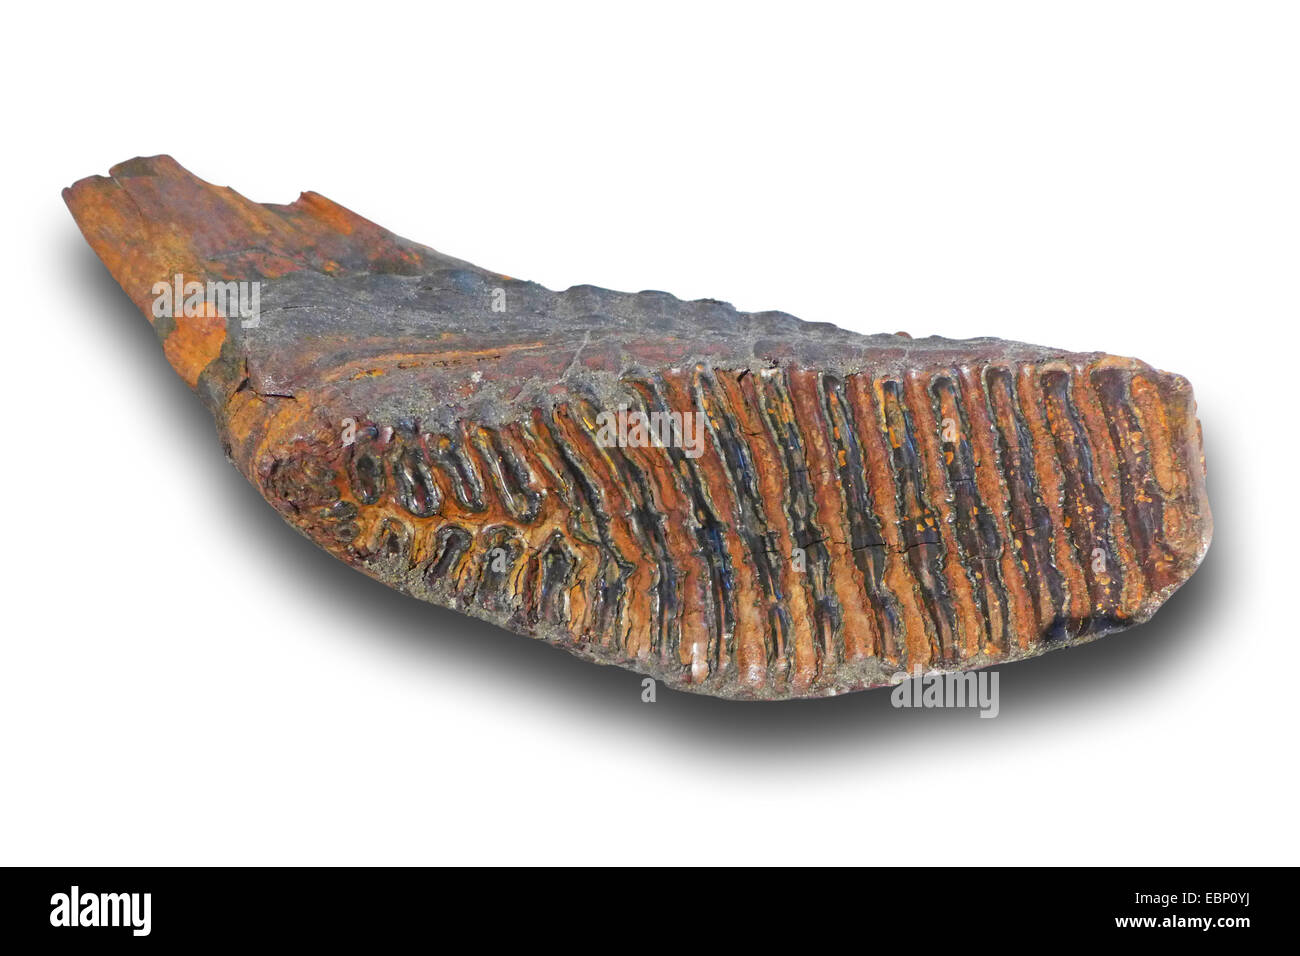 Wollhaarmammut (Mammuthus Primigenius), molare von einem wolligen Mammuth (quartärer 100.000-10.000 Jahre) Ort: Niederlande Stockfoto